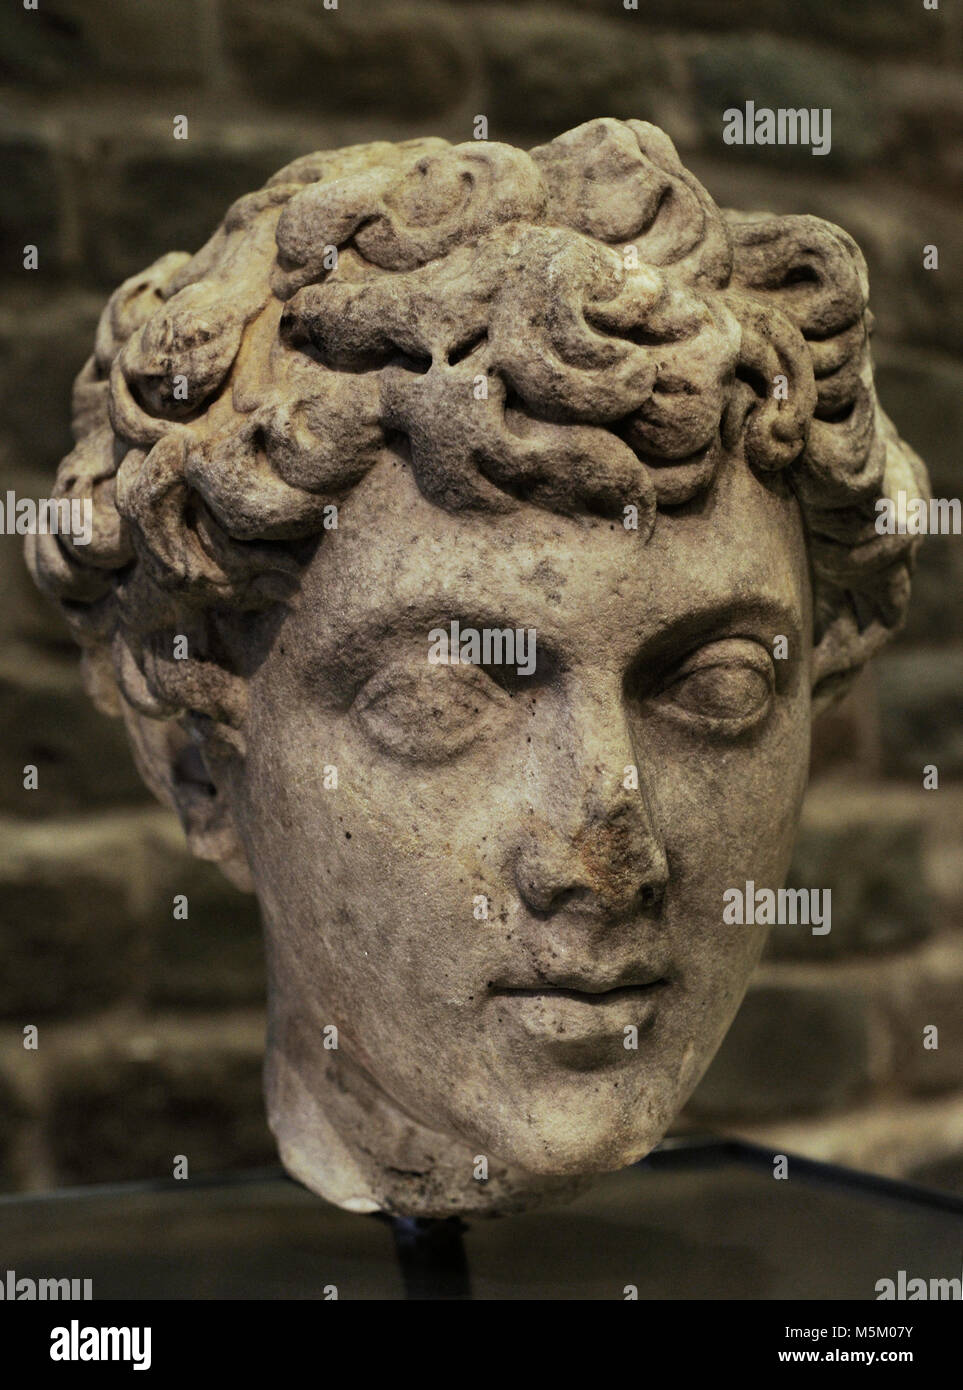 Marco Aurelio (121-180). Imperatore romano. Ritratto dell'imperatore come un bambino. Datate tra 140-145 d.c. Museo Roman-Germanic. Colonia. Germania. Foto Stock